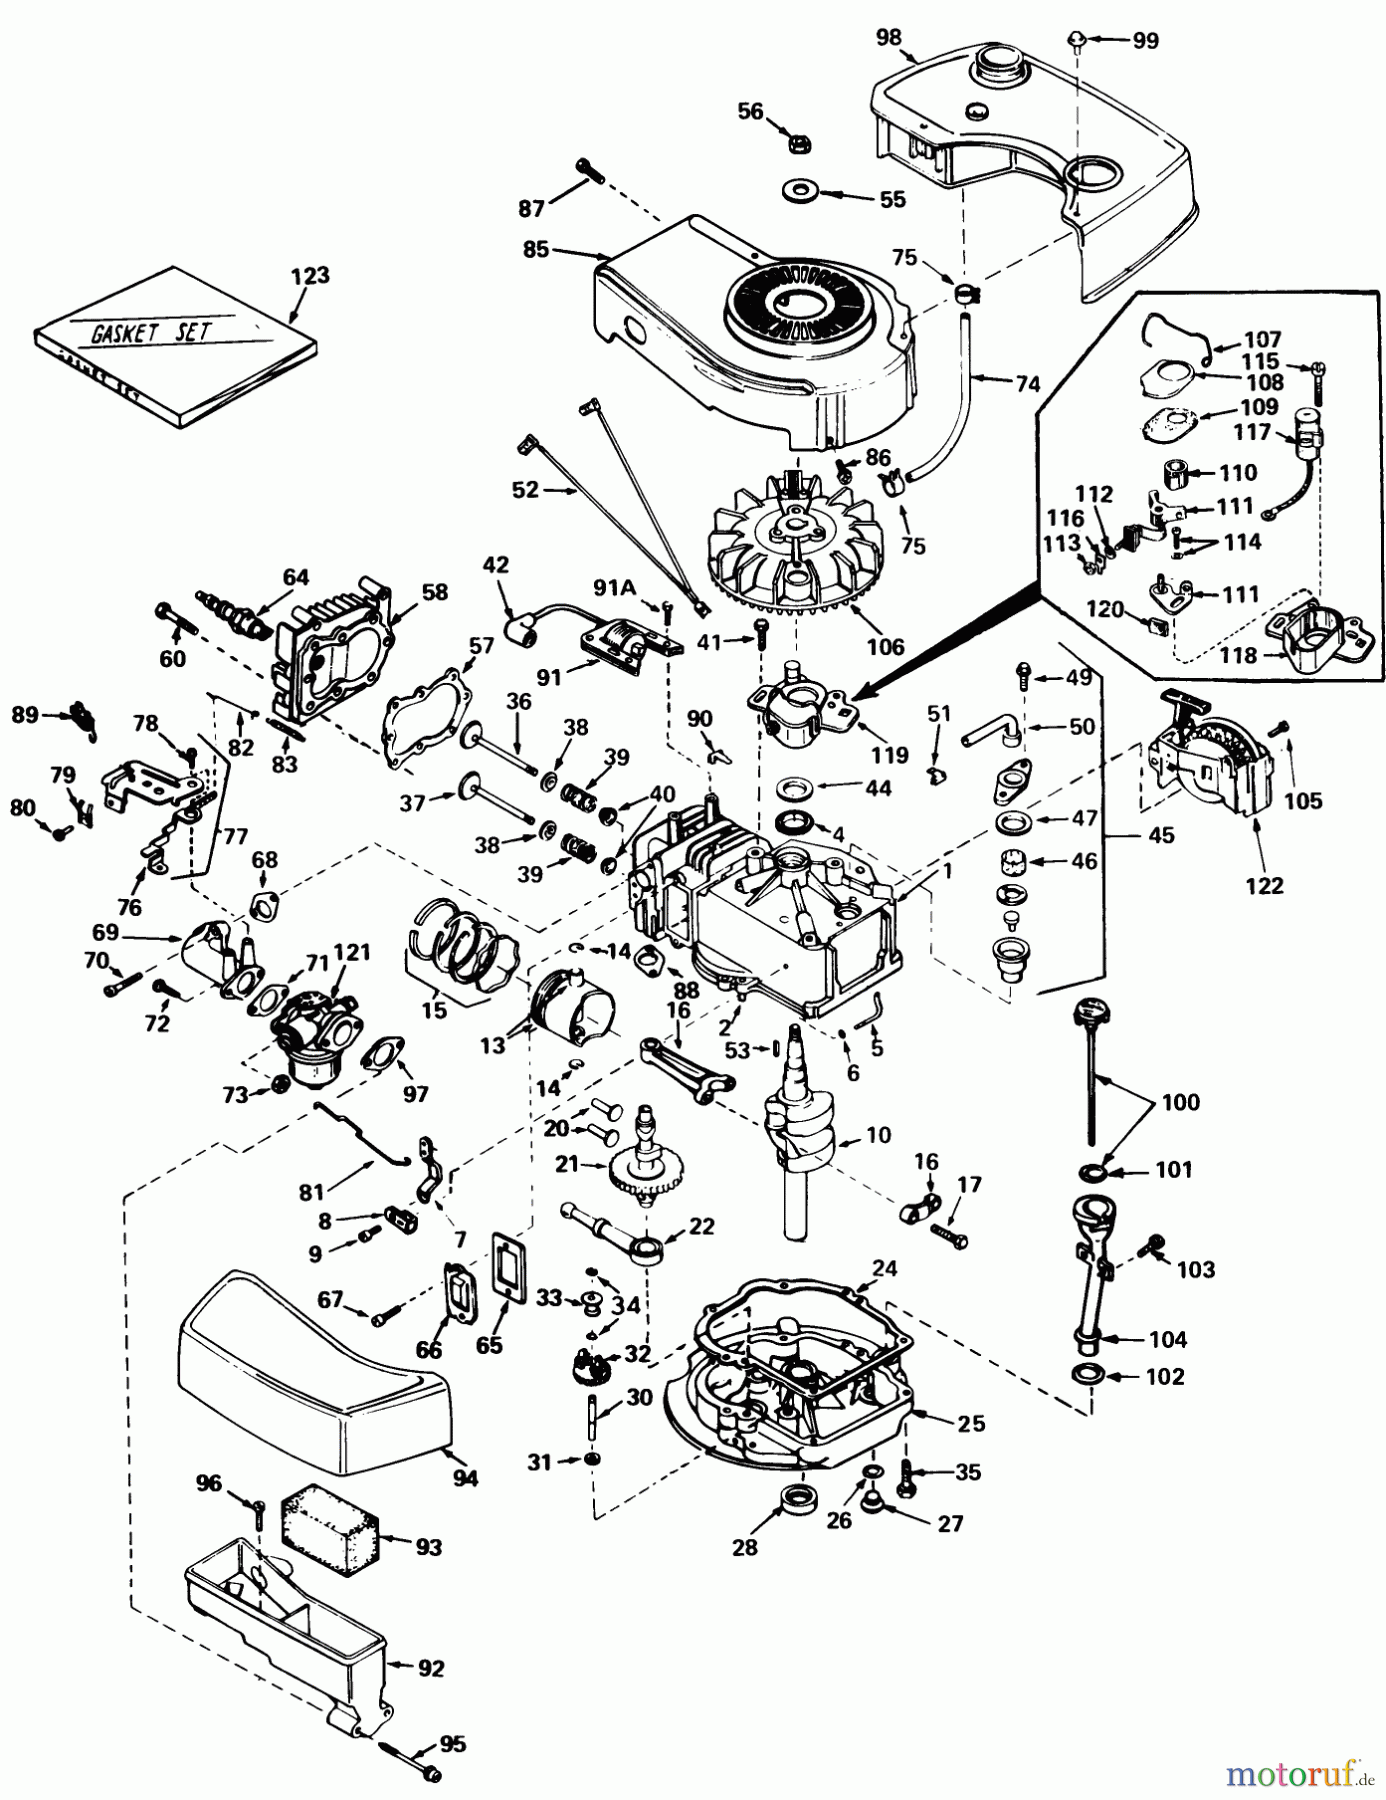  Toro Neu Mowers, Walk-Behind Seite 1 20772 - Toro Lawnmower, 1979 (9000001-9999999) ENGINE TECUMSEH MODEL NO. TNT 100-10059C